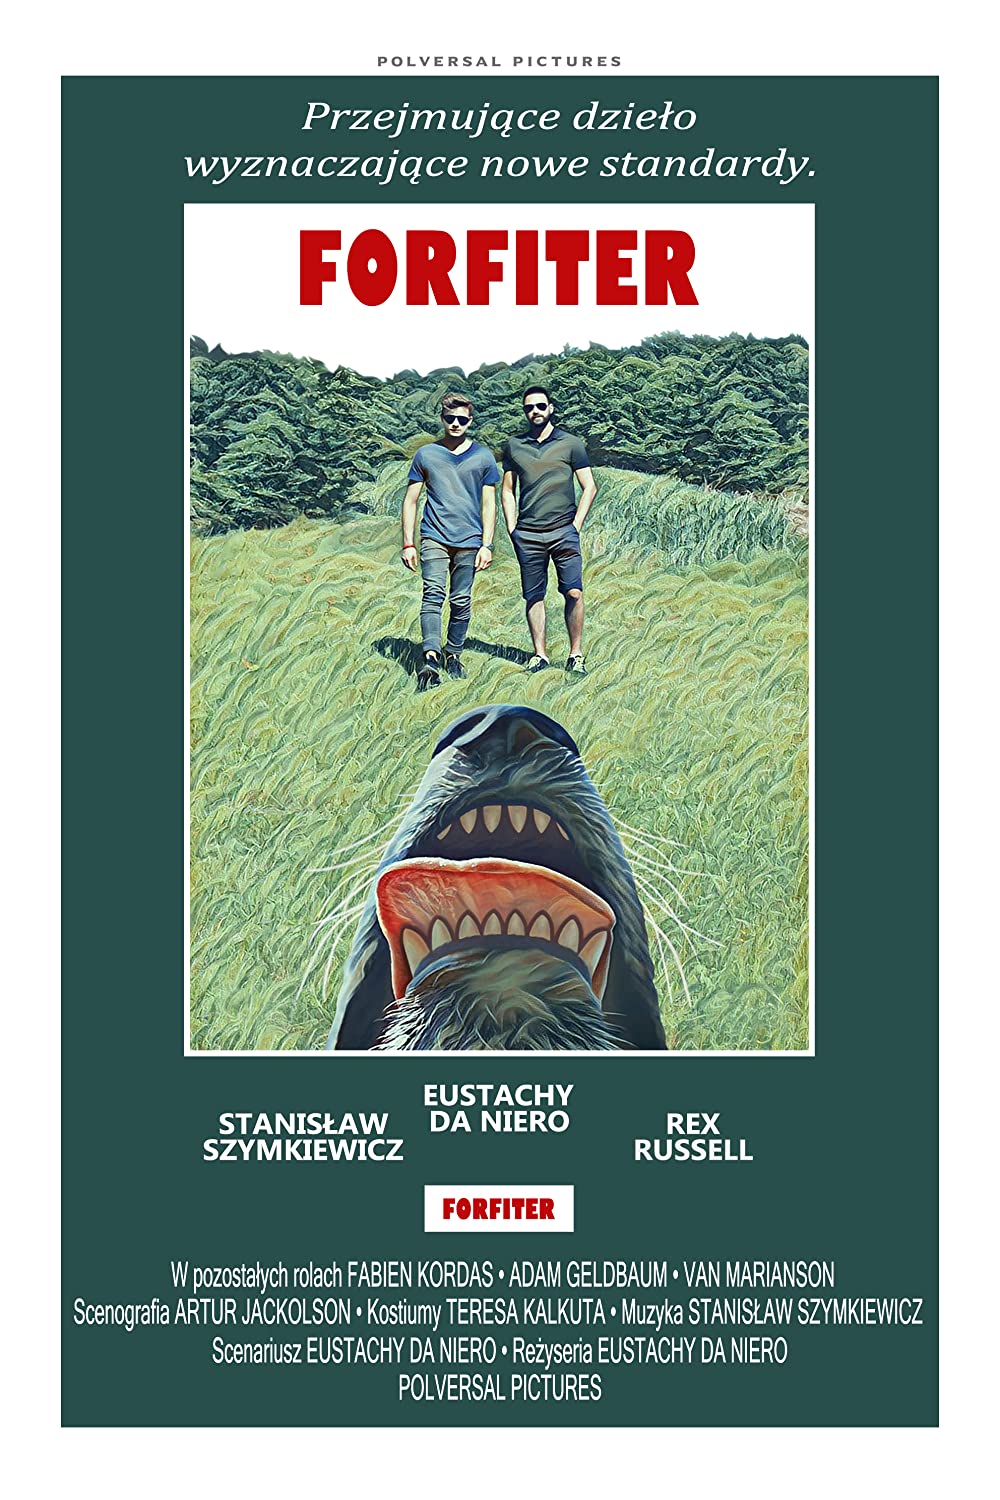 Forfiter (Short 2021)